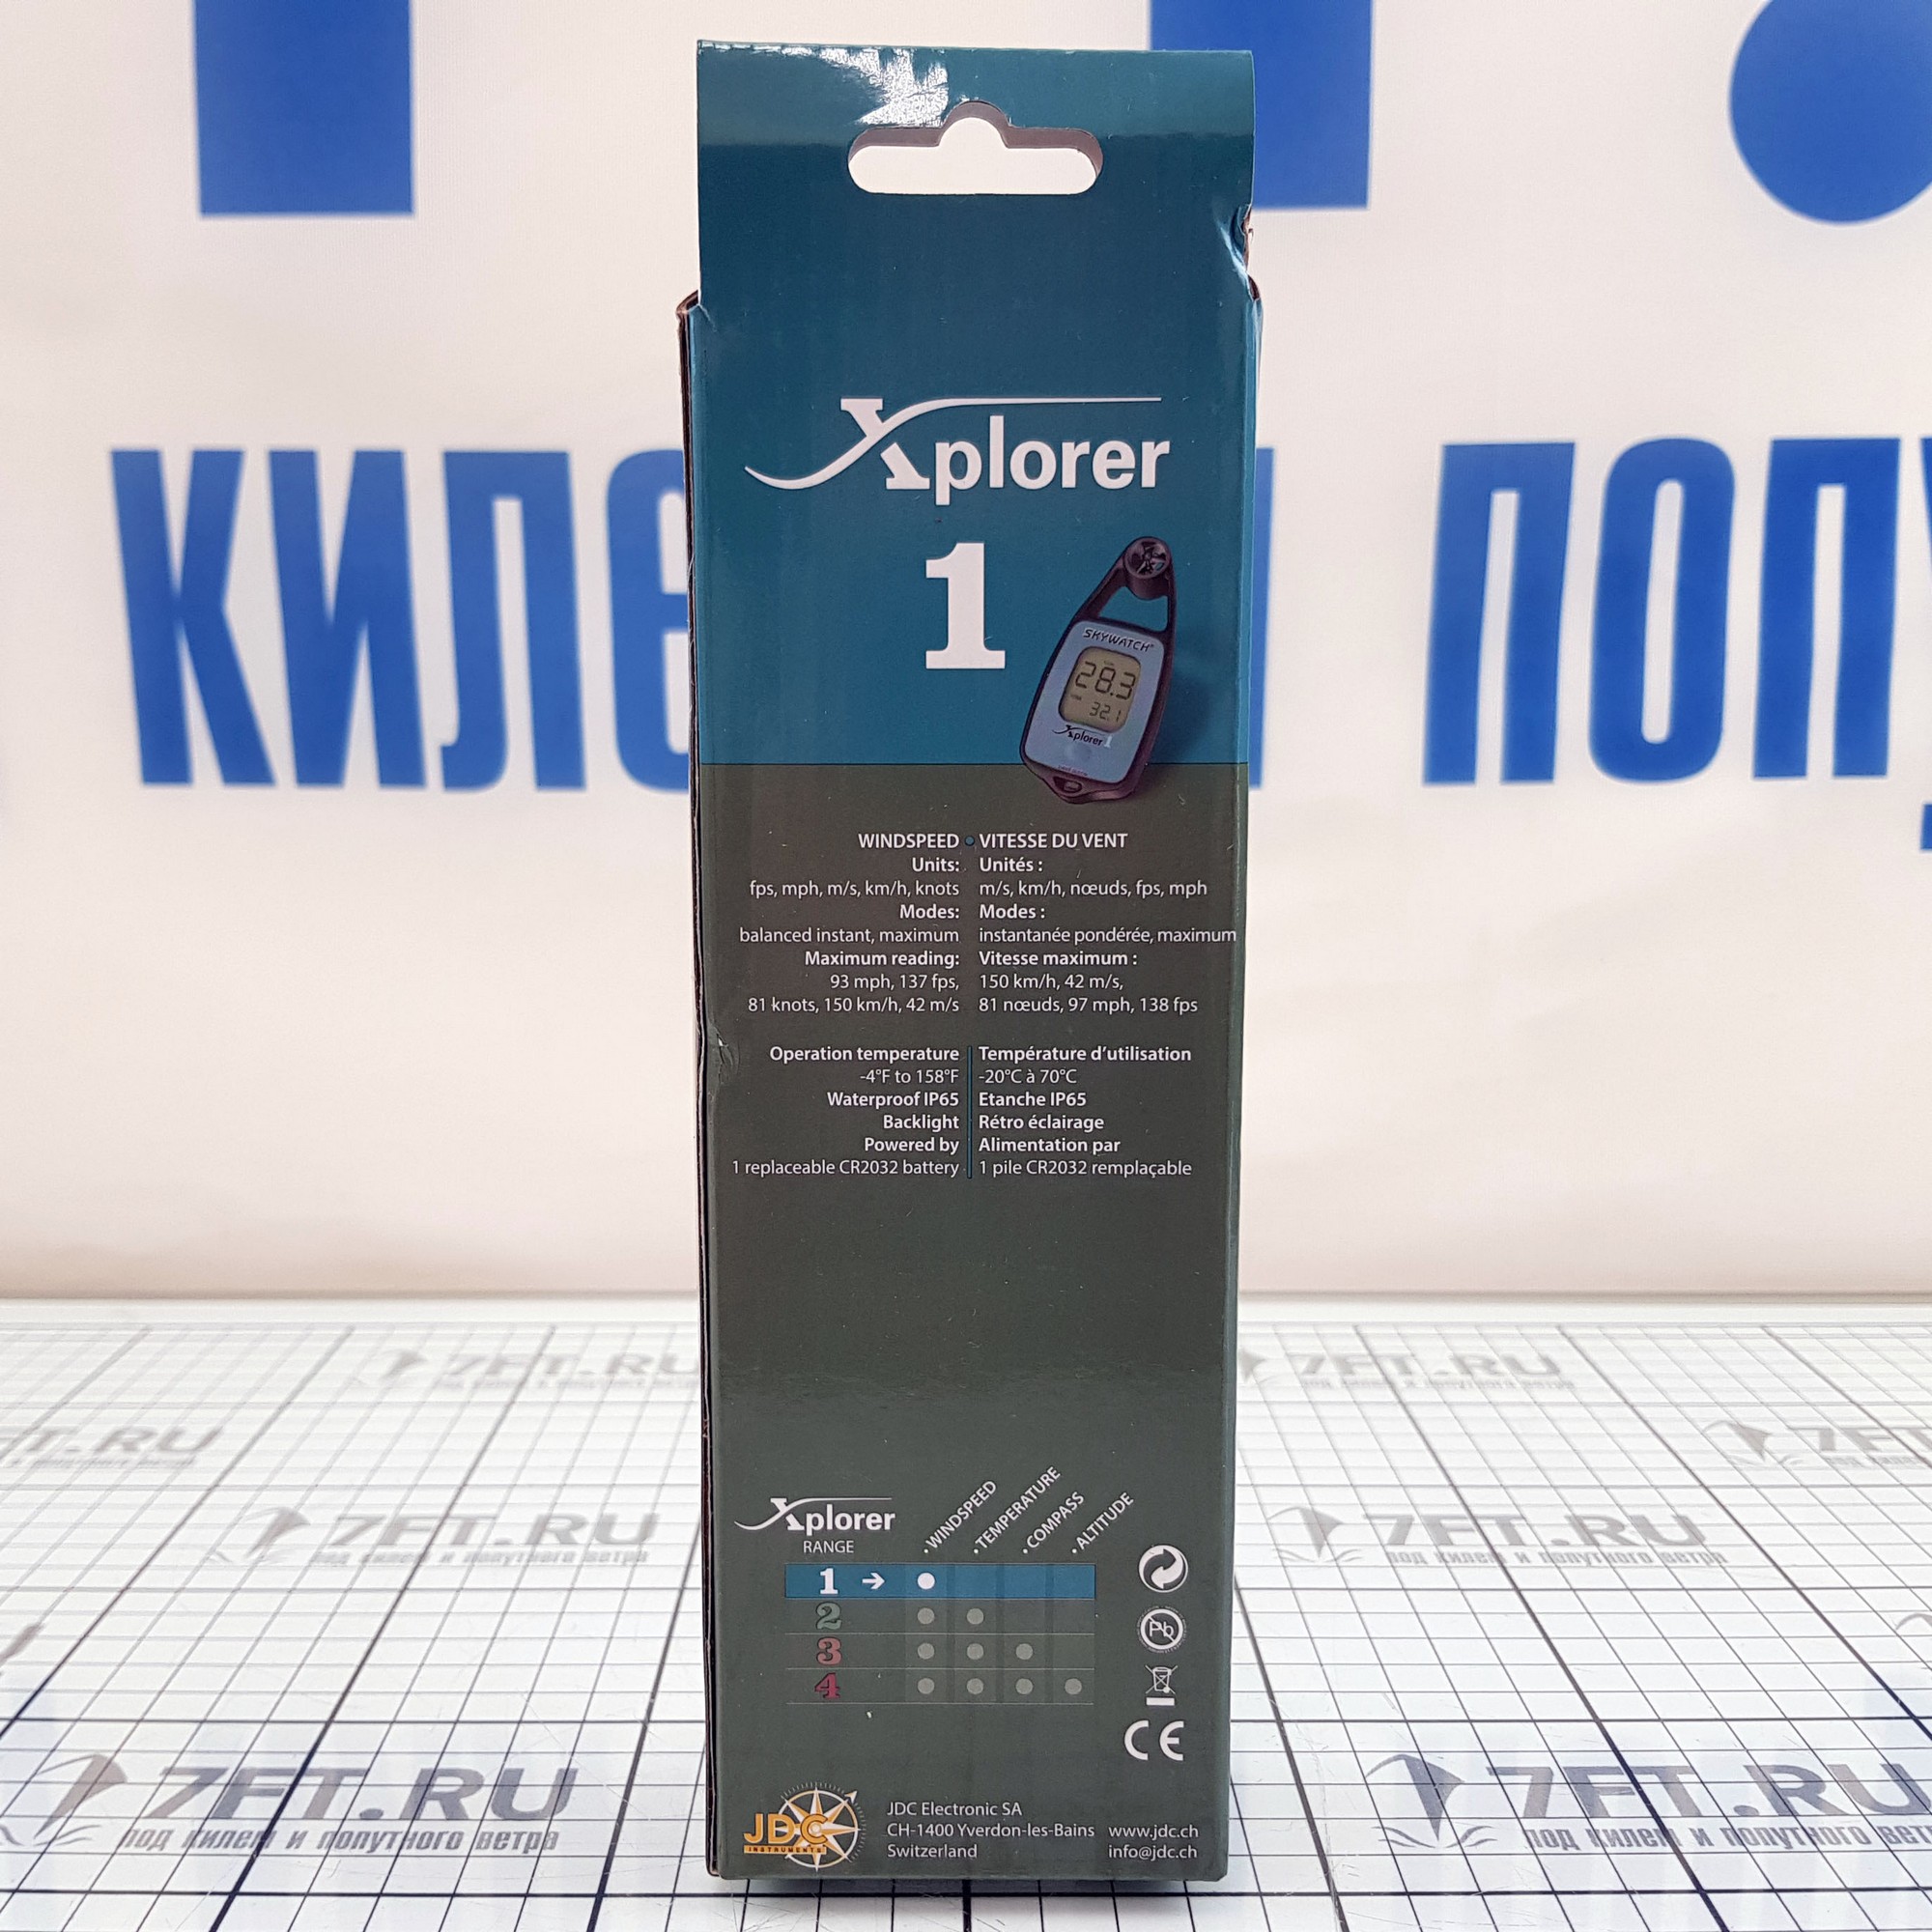 Купить Крыльчатый анемометр Skywatch Xplorer 1 XP-01 41 x 93 x 17 мм 7ft.ru в интернет магазине Семь Футов